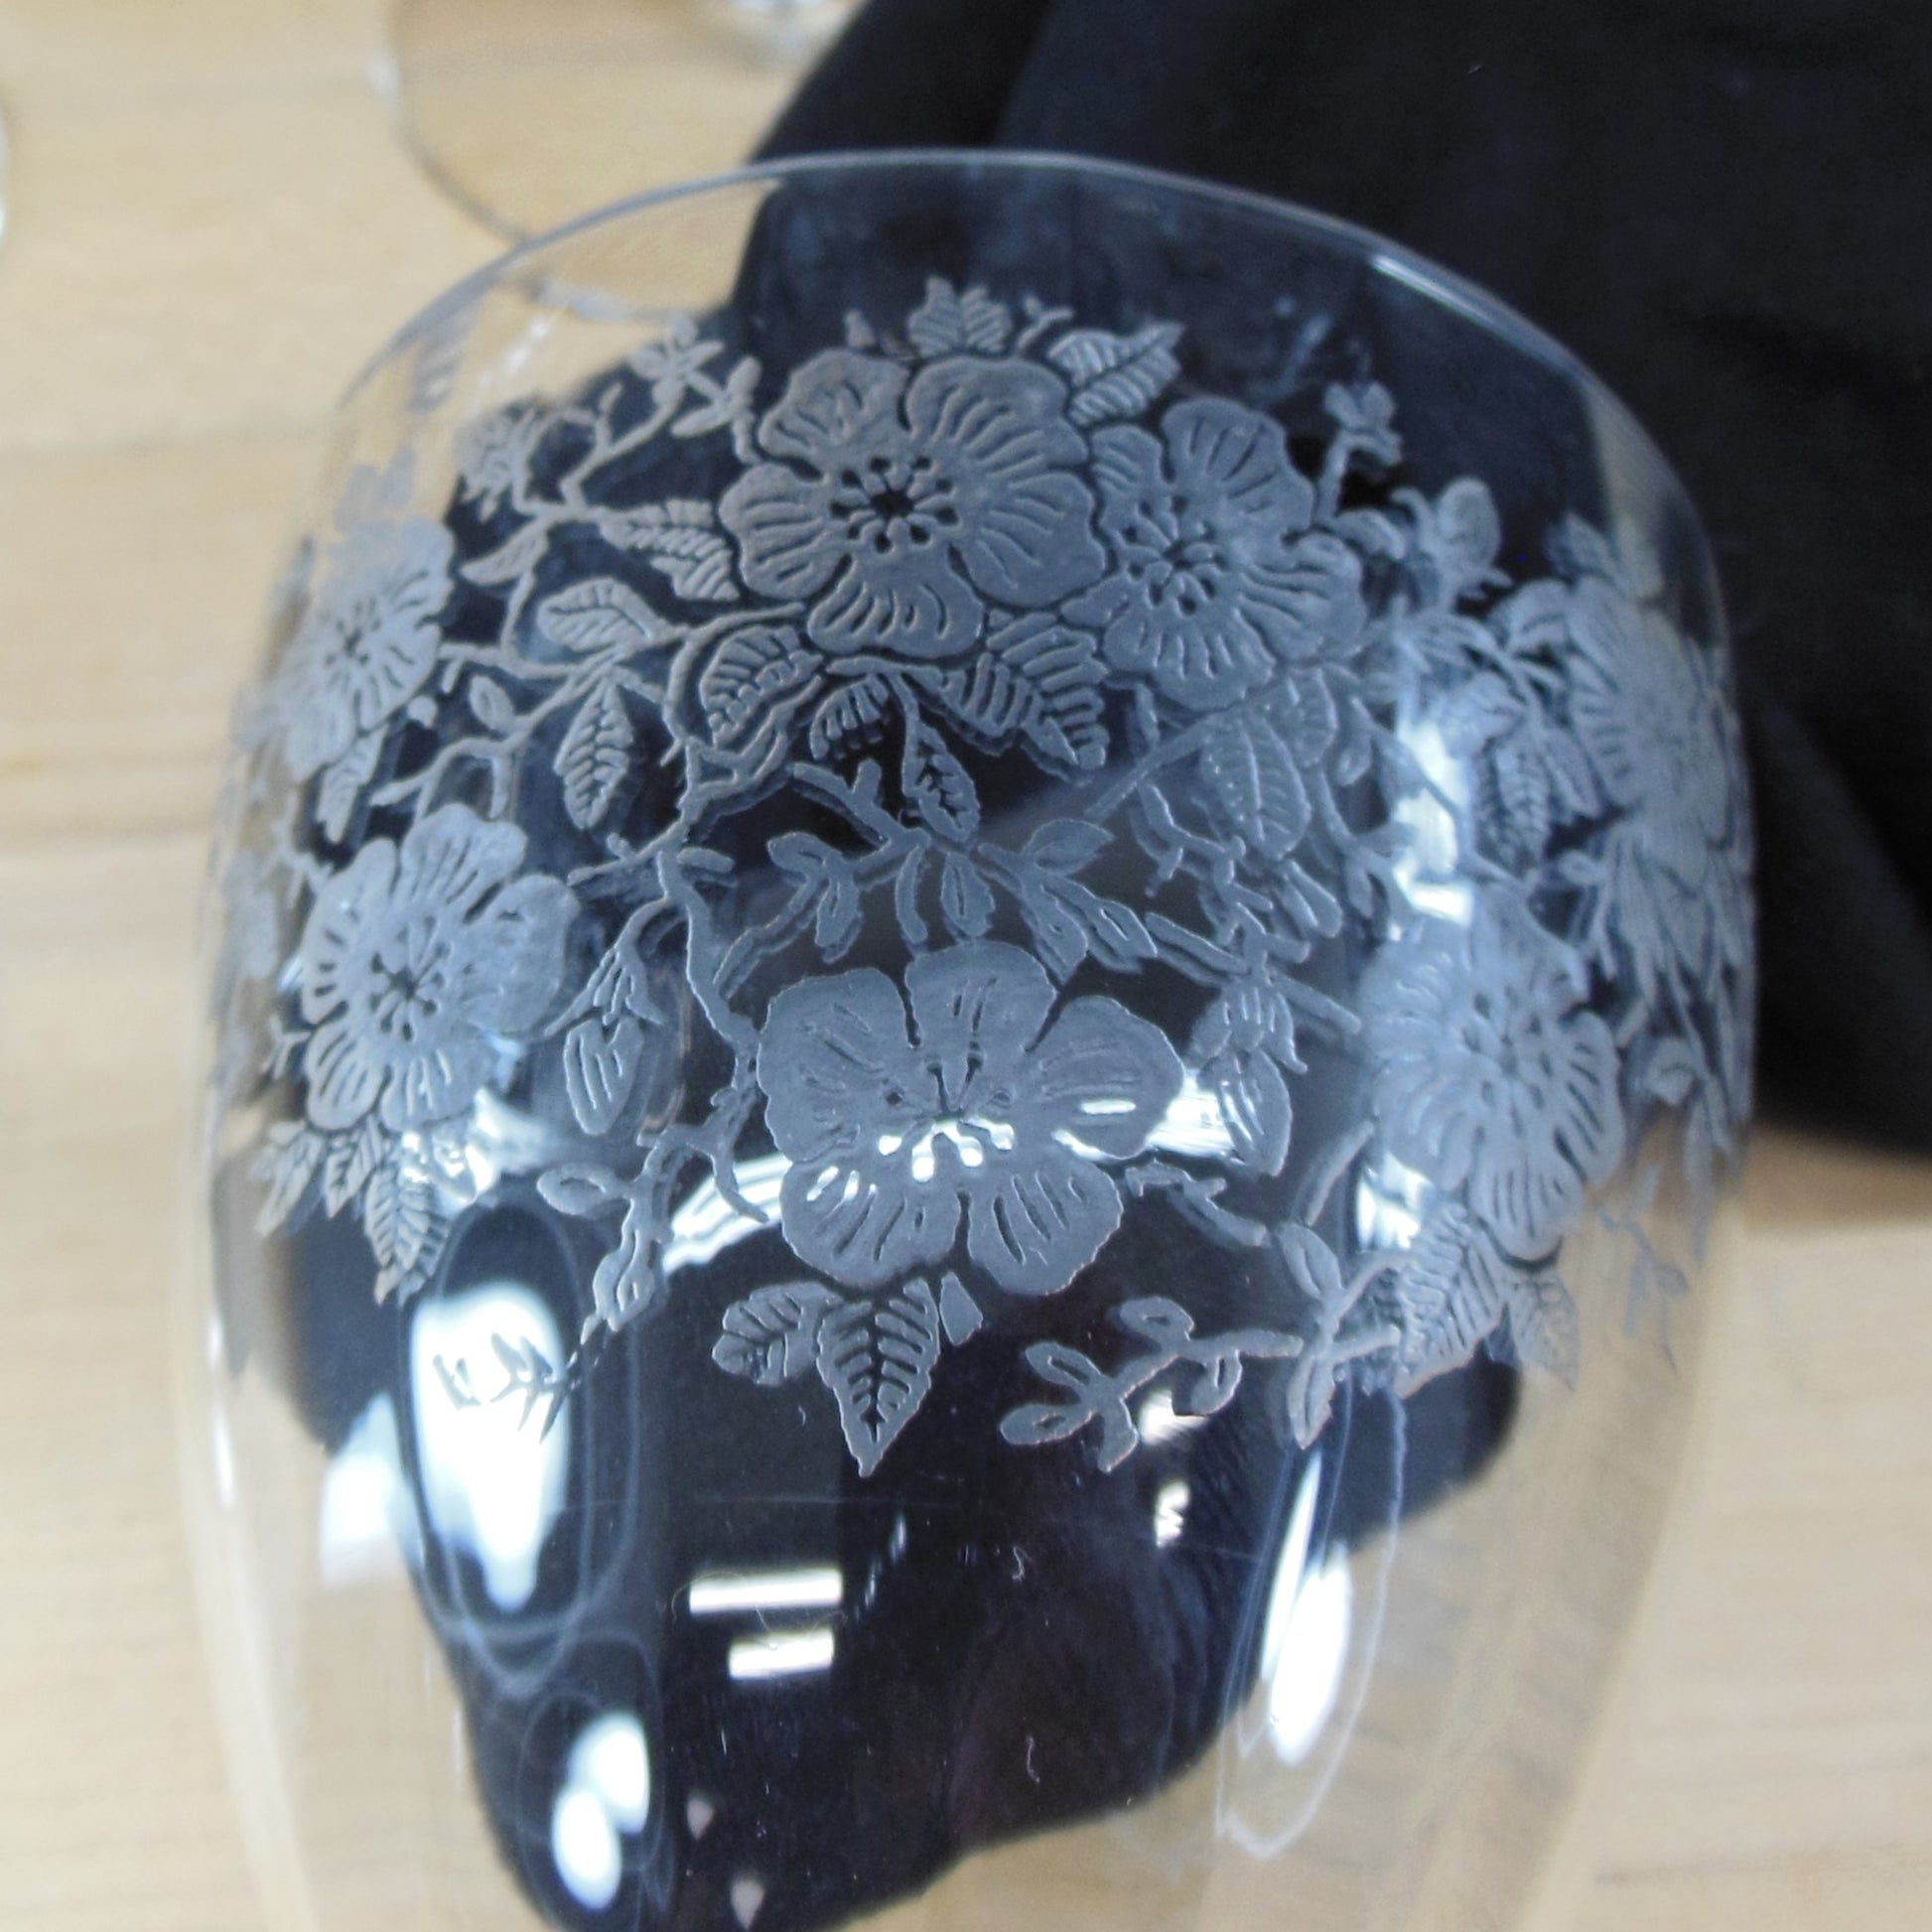 Unknown Maker UNK2629 Elegant Floral Etched Crystal Water Glass Goblet - 7 Set Panels